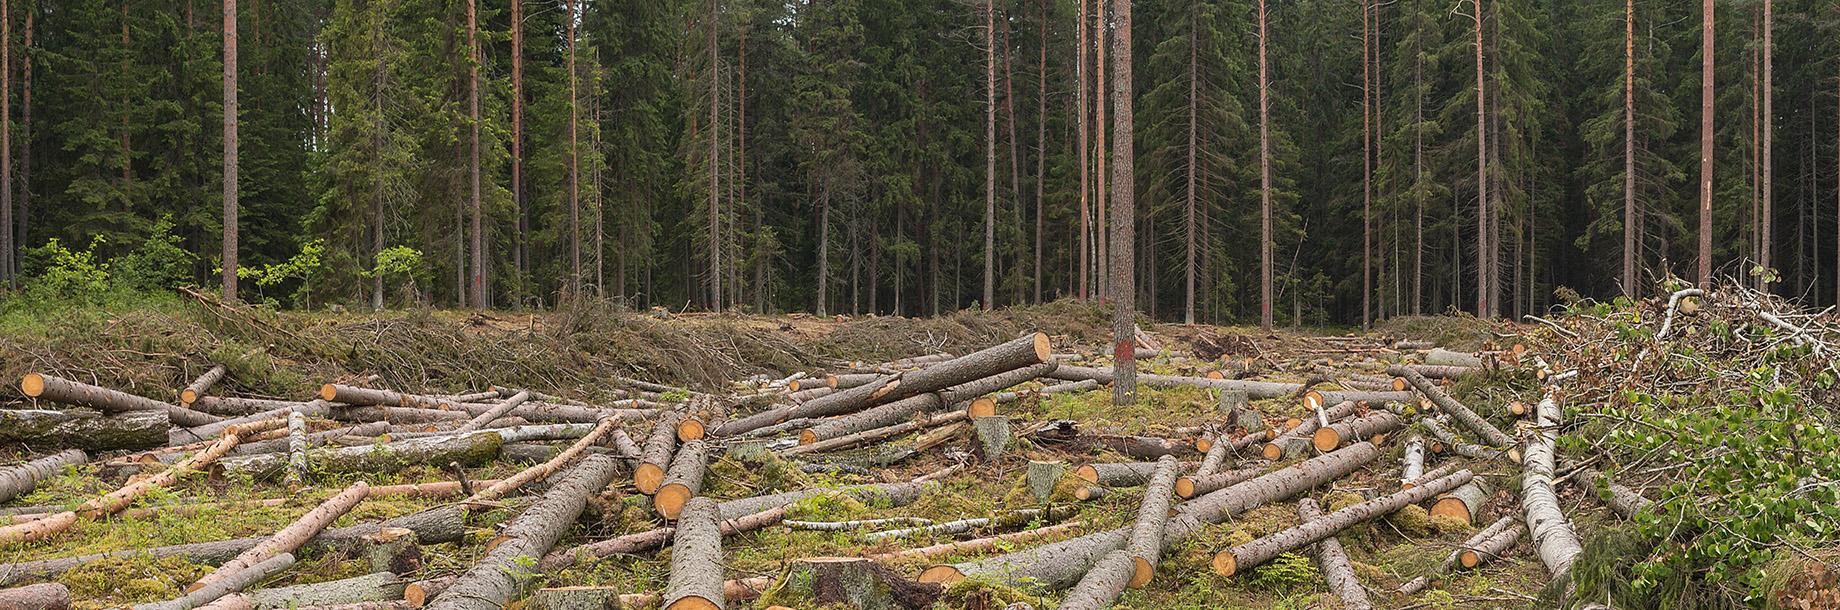 מחקר חדש: השילוב בין ההתחממות הגלובלית לכריתת היערות עלול להוביל להכחדה המונית של מיני בעלי חיים